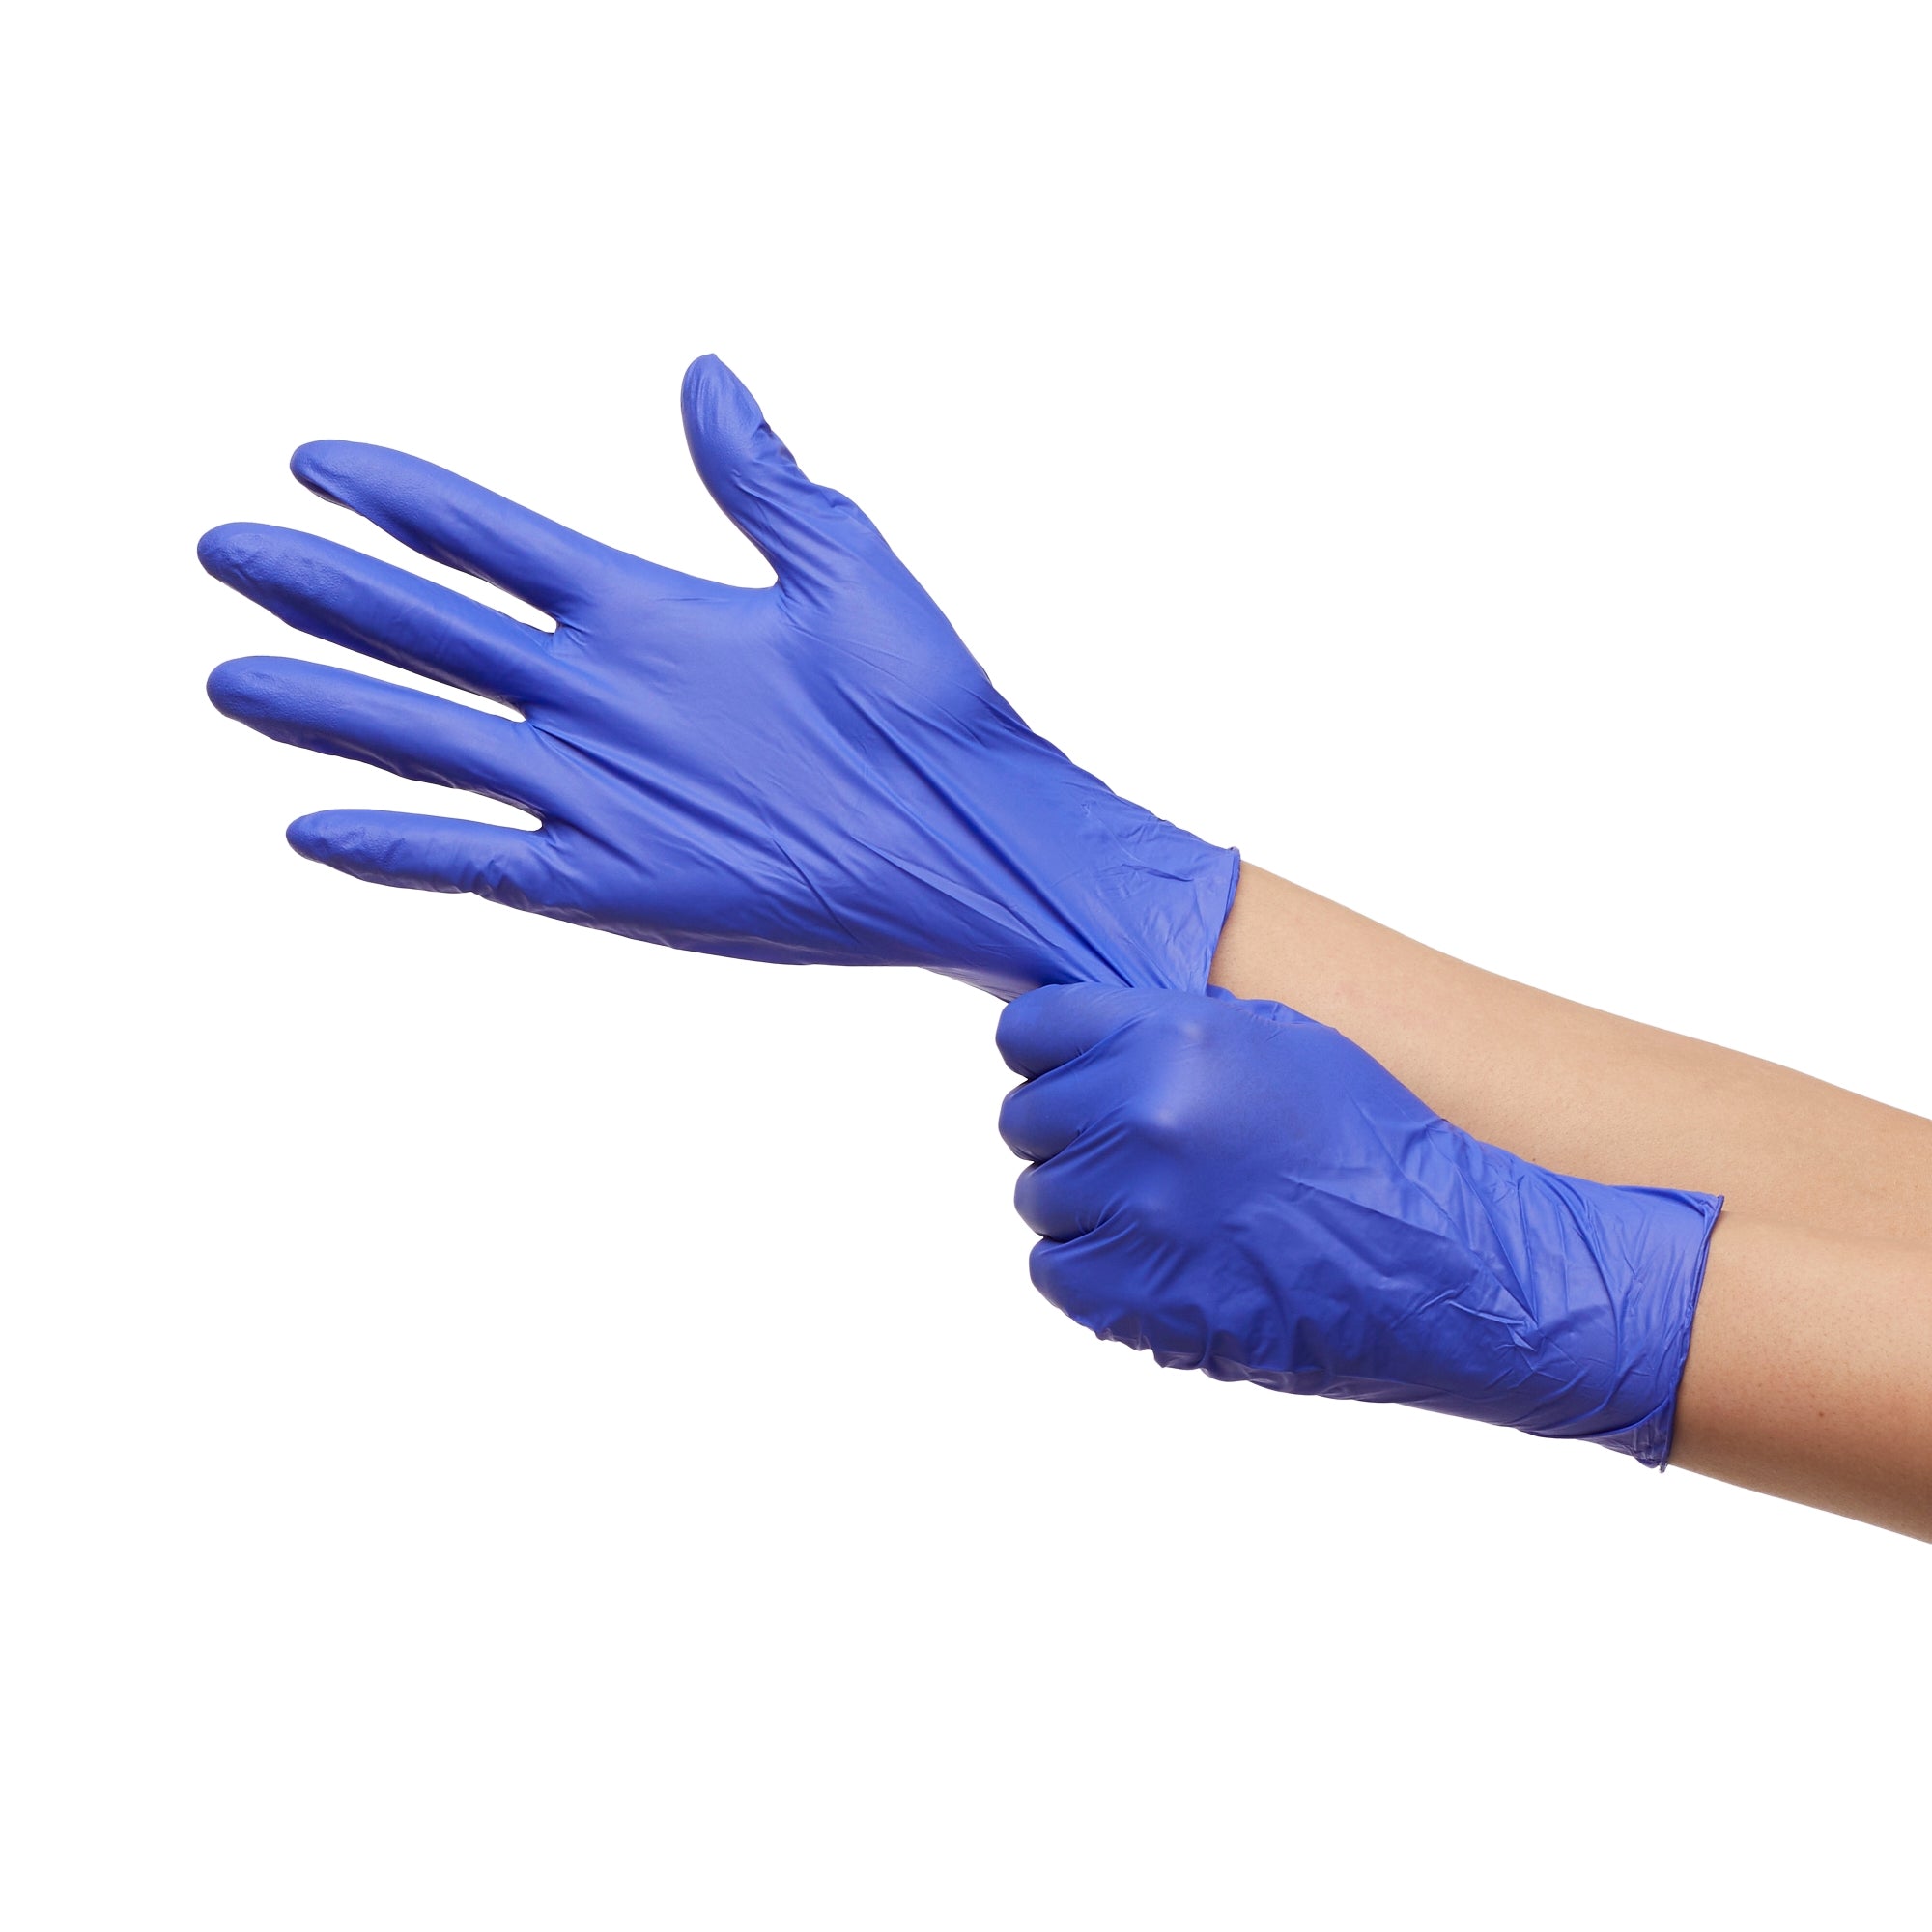 McKesson Confiderm® 3.0 Nitrile Gloves, Medium - Blue, 100ct